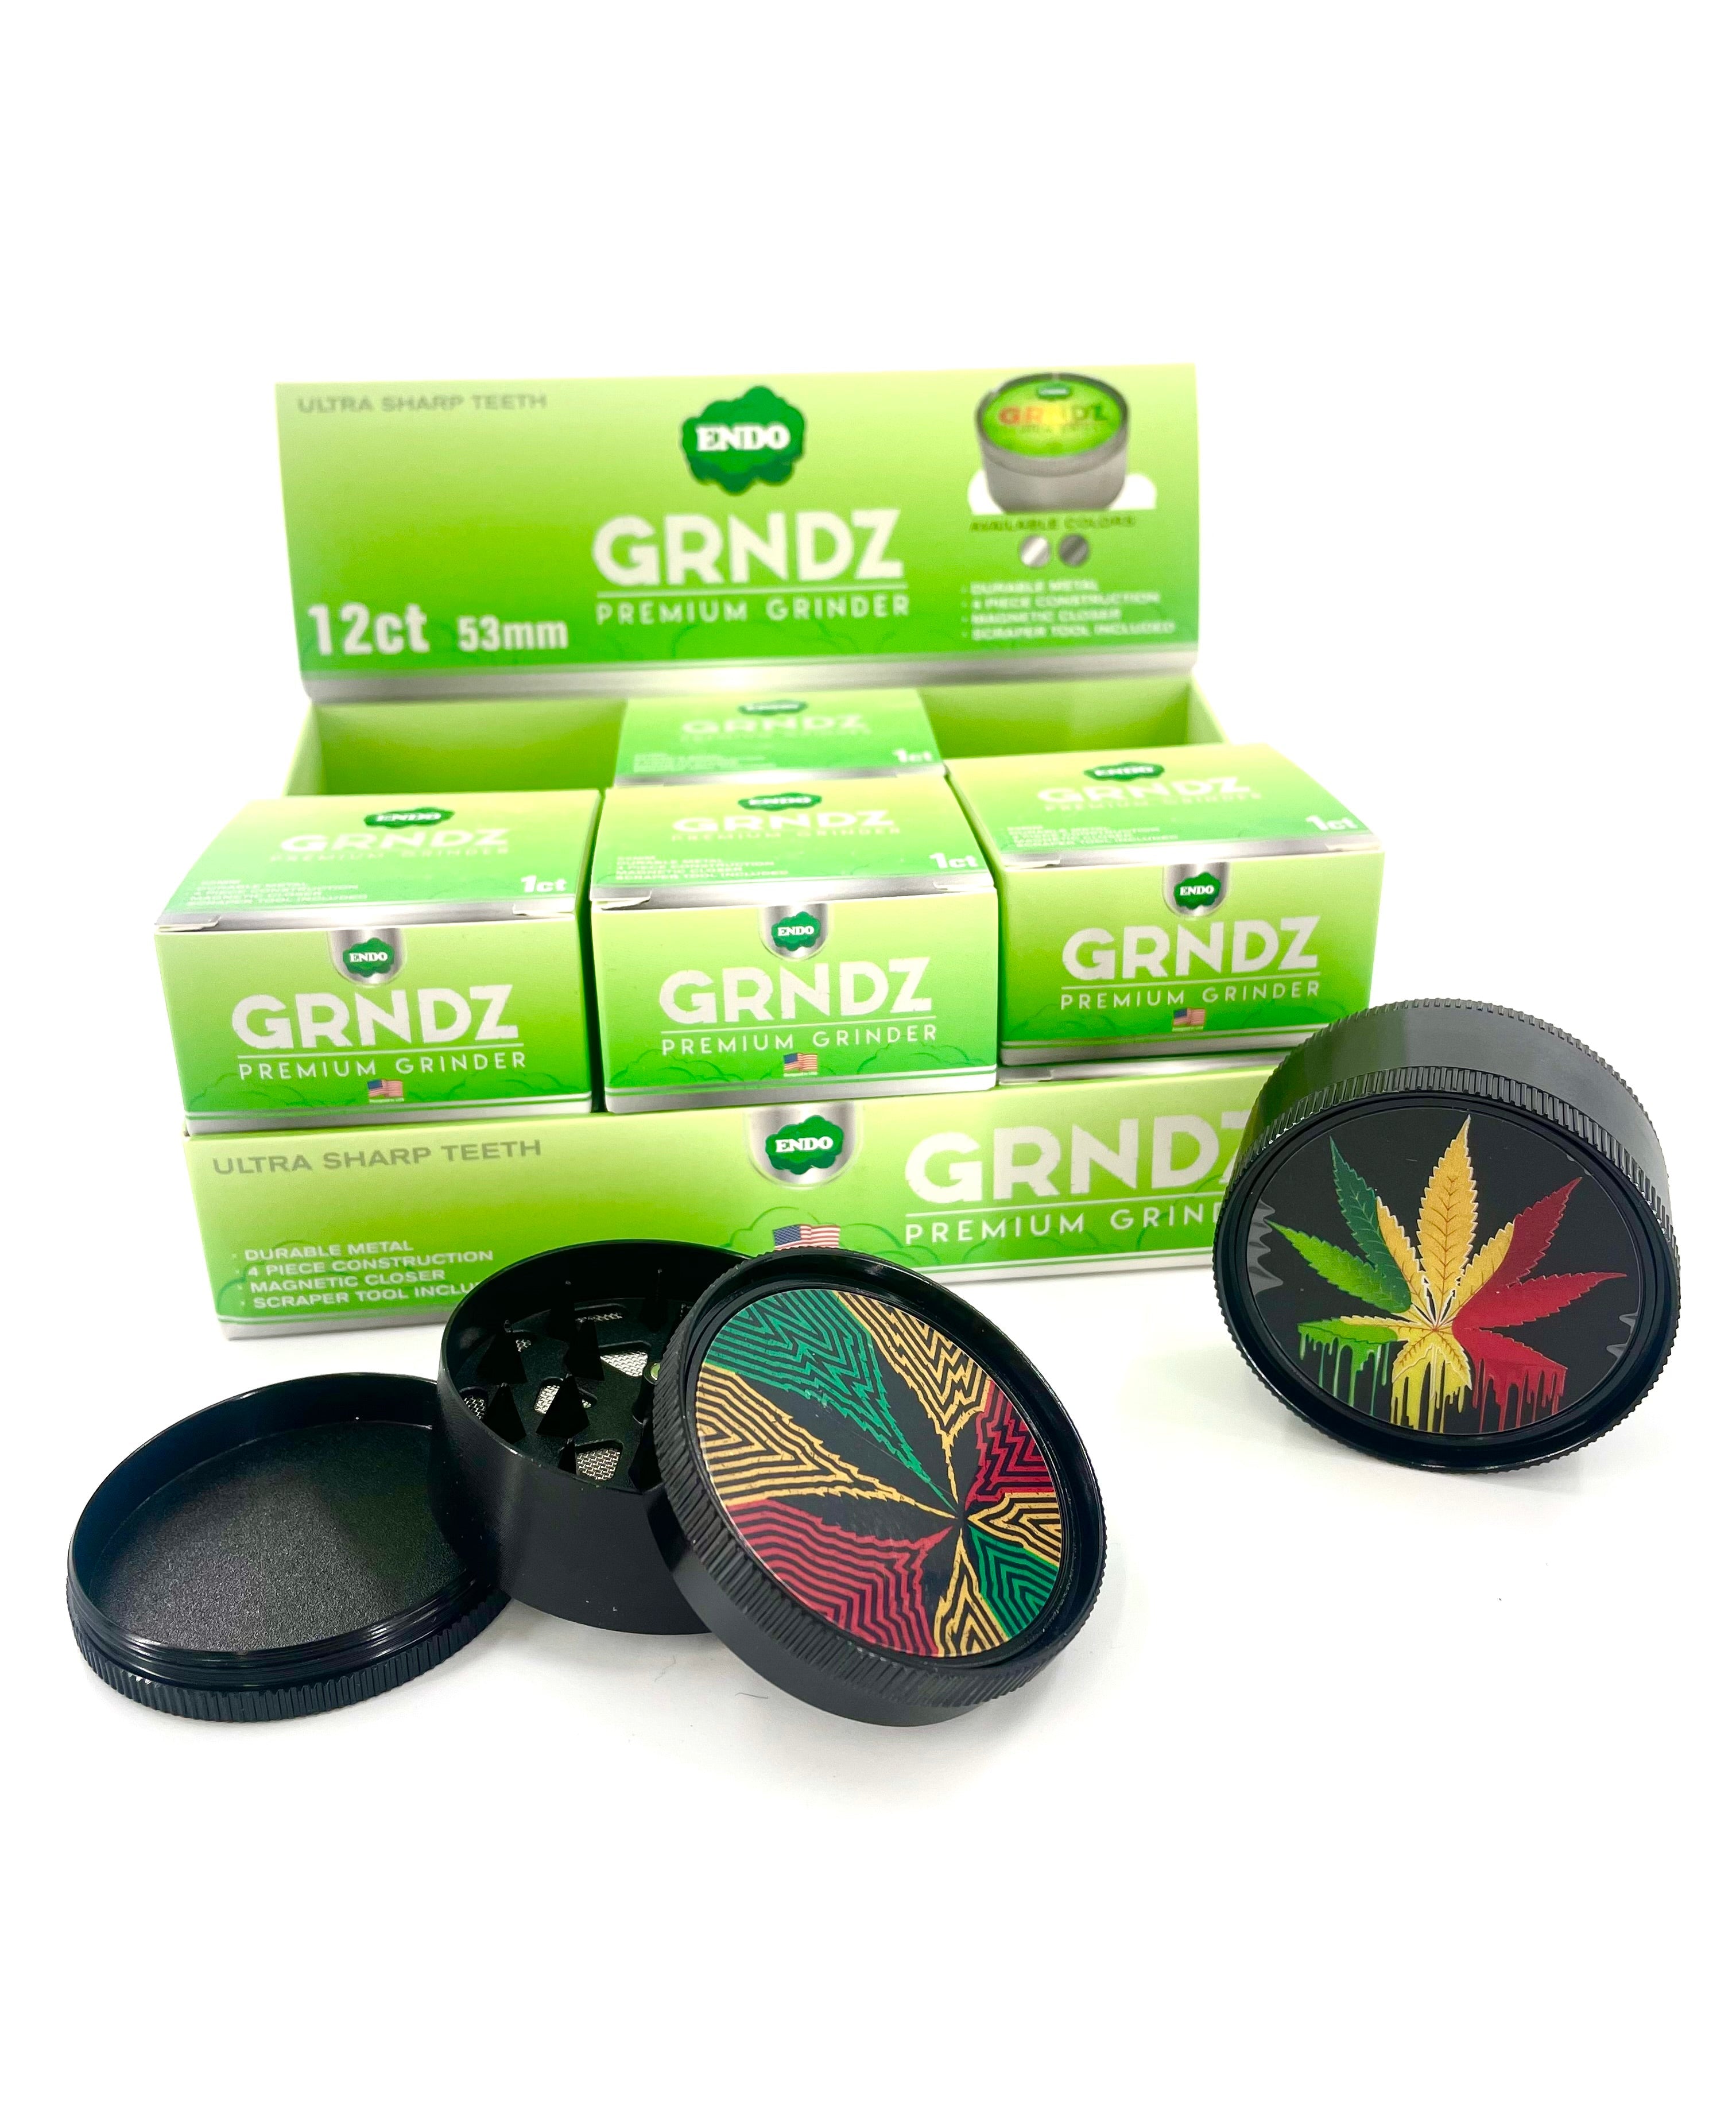 Endo Grndz Premium 53mm Leaf Grinder - 12 Count (70007)